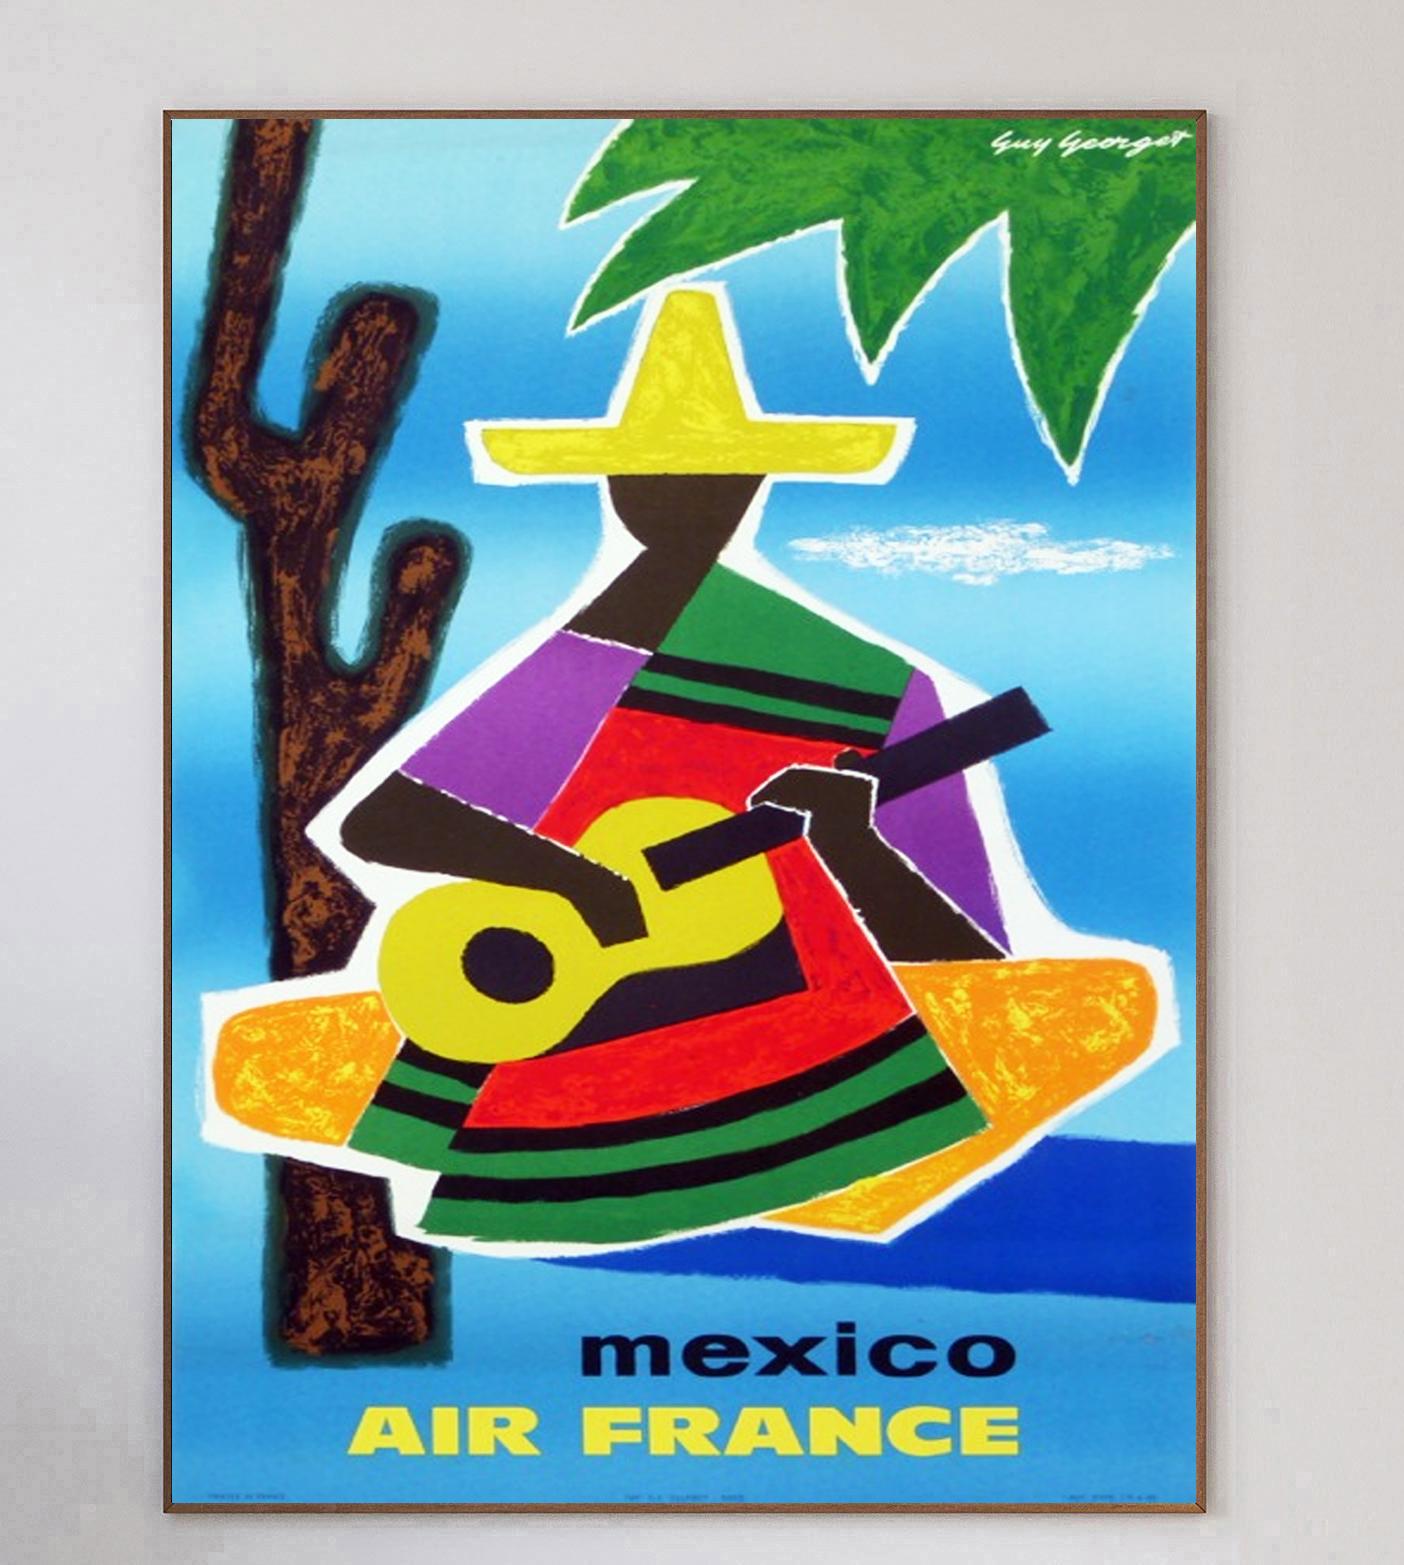 Réalisée par l'artiste français Guy Georget, qui a travaillé sur de nombreuses affiches d'Air France à l'époque, cette affiche promouvant les liaisons de la compagnie aérienne avec le Mexique a été créée en 1962. Air France a été créée en 1933 à la